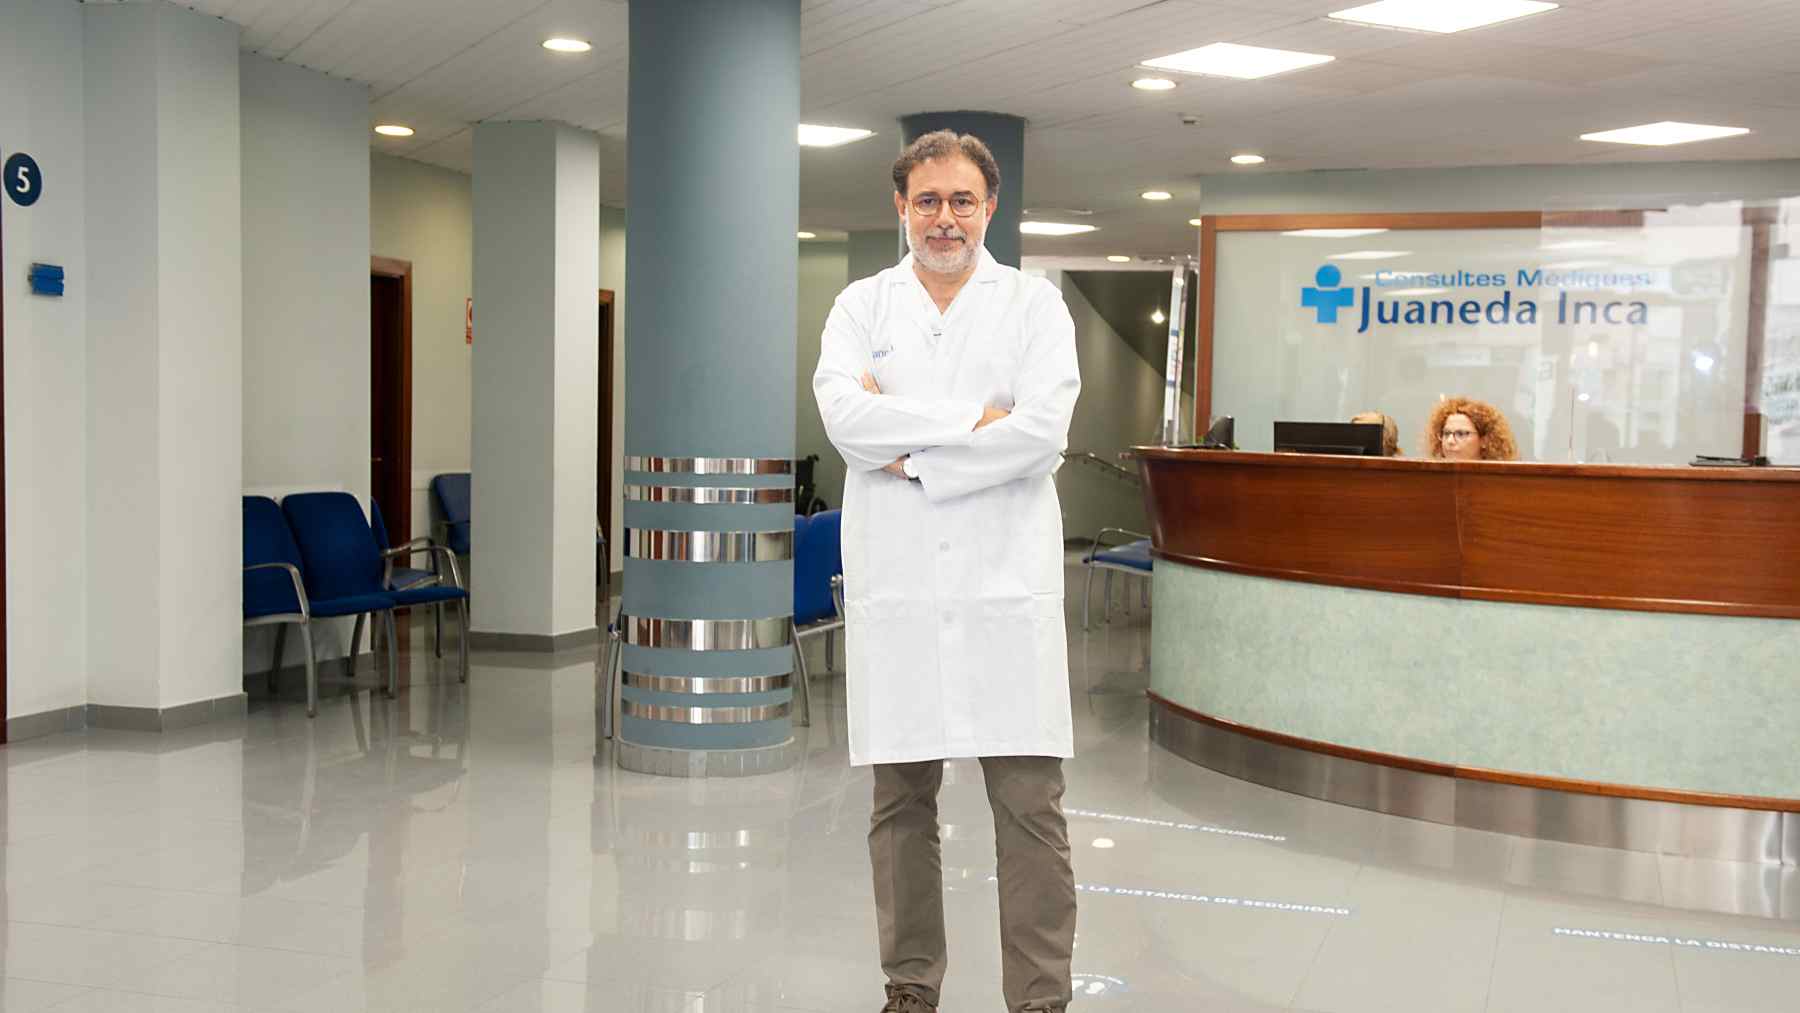 El Dr. Tomeu Munar, uno de los médicos de Juaneda Inca.